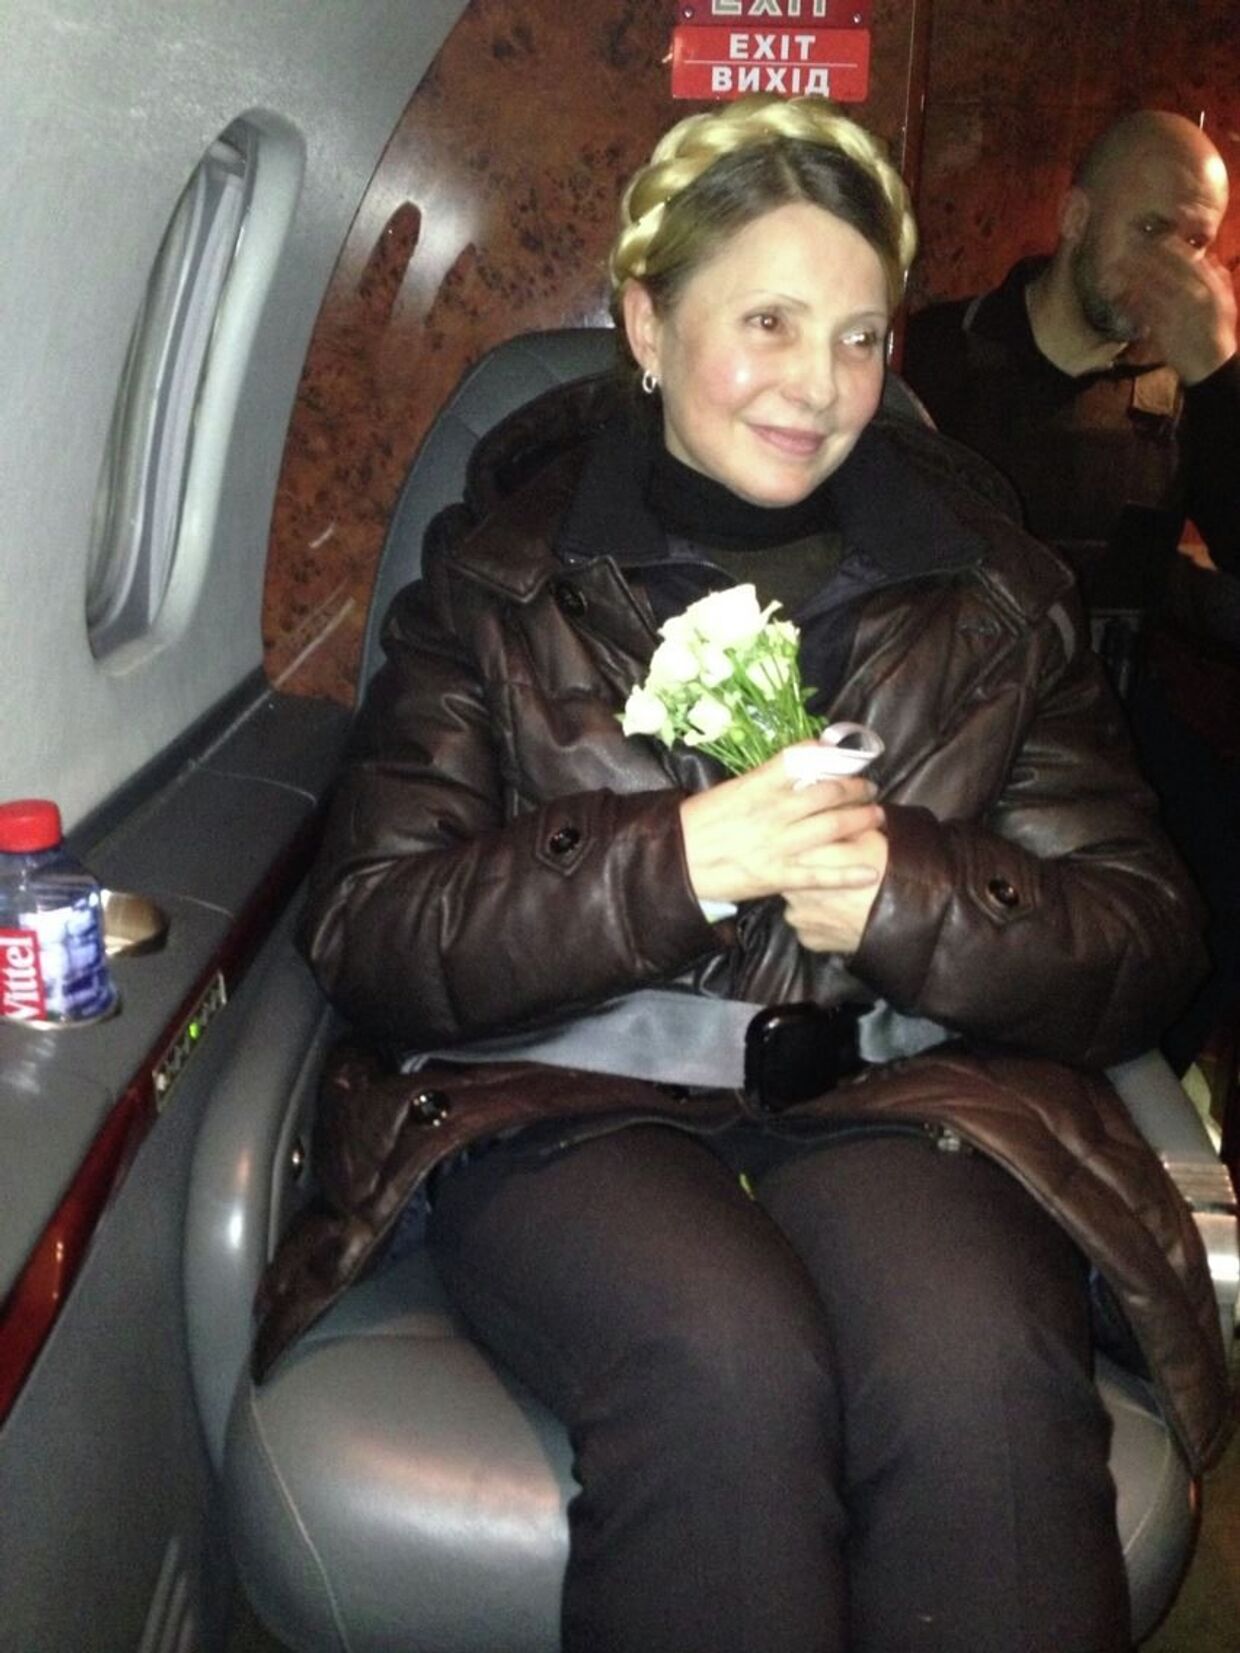 Юлия Тимошенко после освобождения из тюрьмы